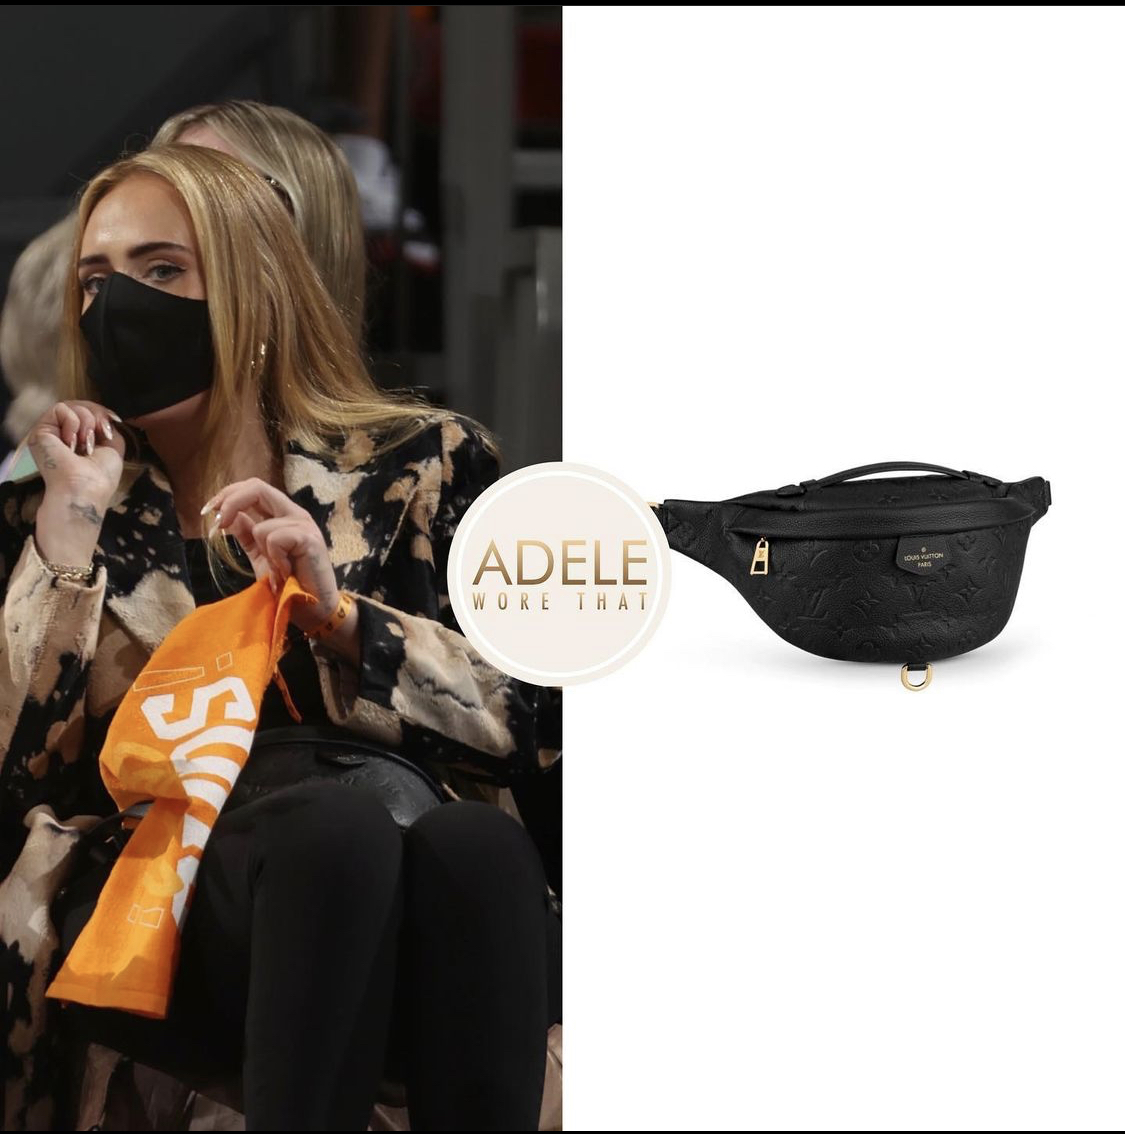 Adele khoác chiếc túi da LV có giá hơn 44 triệu đồng và hiện cũng đã trong tình trạng hết hàng